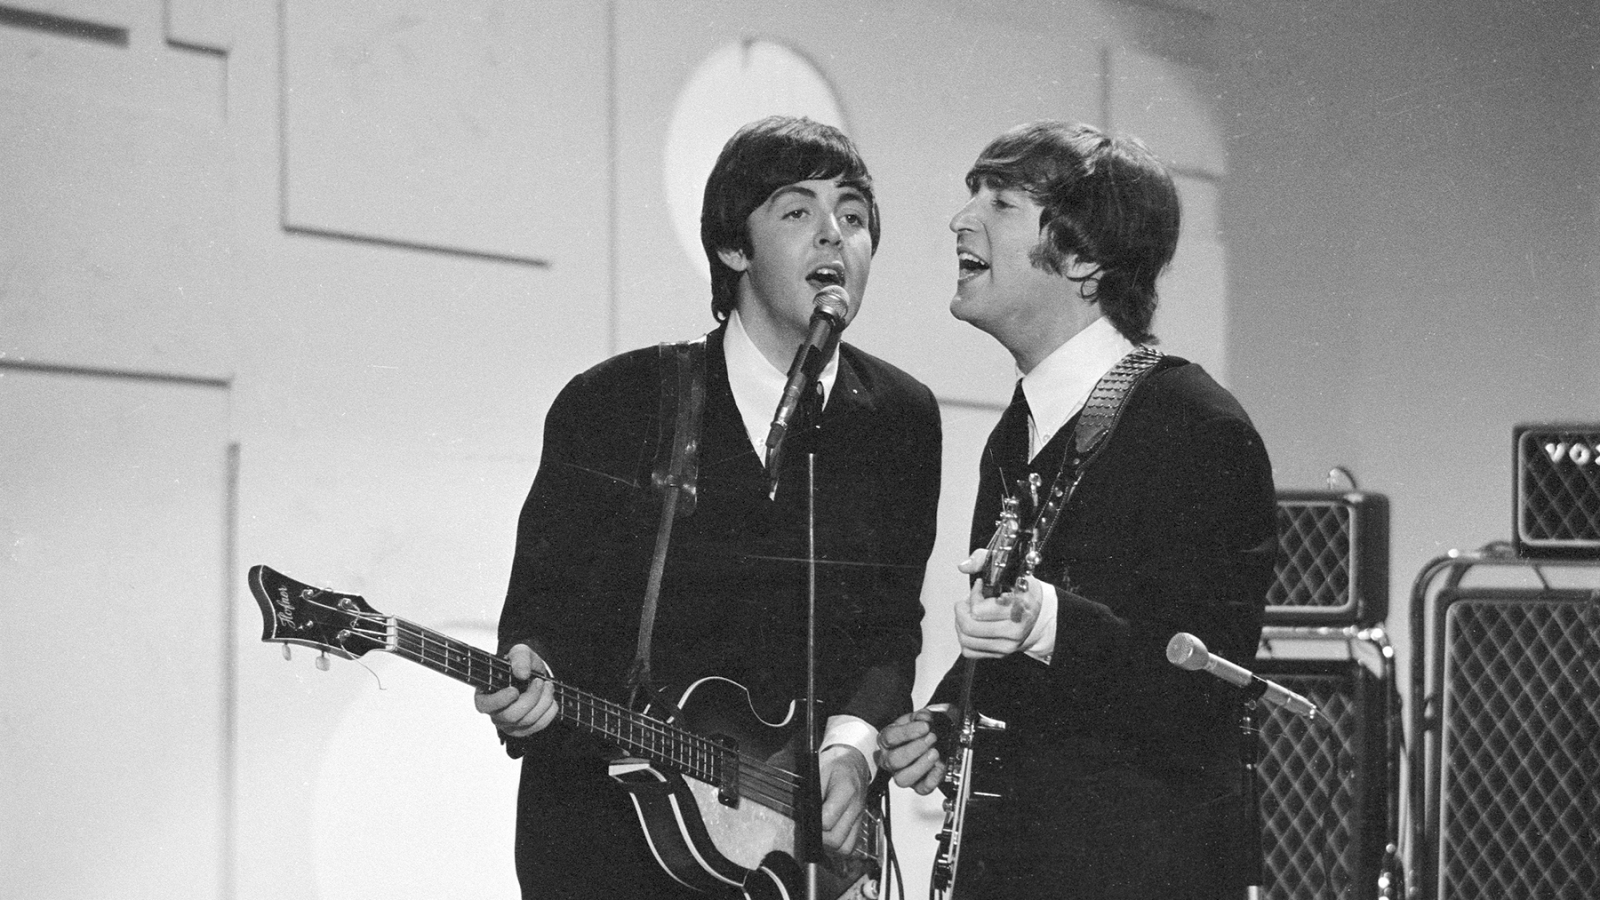 Paul McCartney ricorda di aver scritto "Here Today" dopo la morte di John Lennon - Rolling Stone